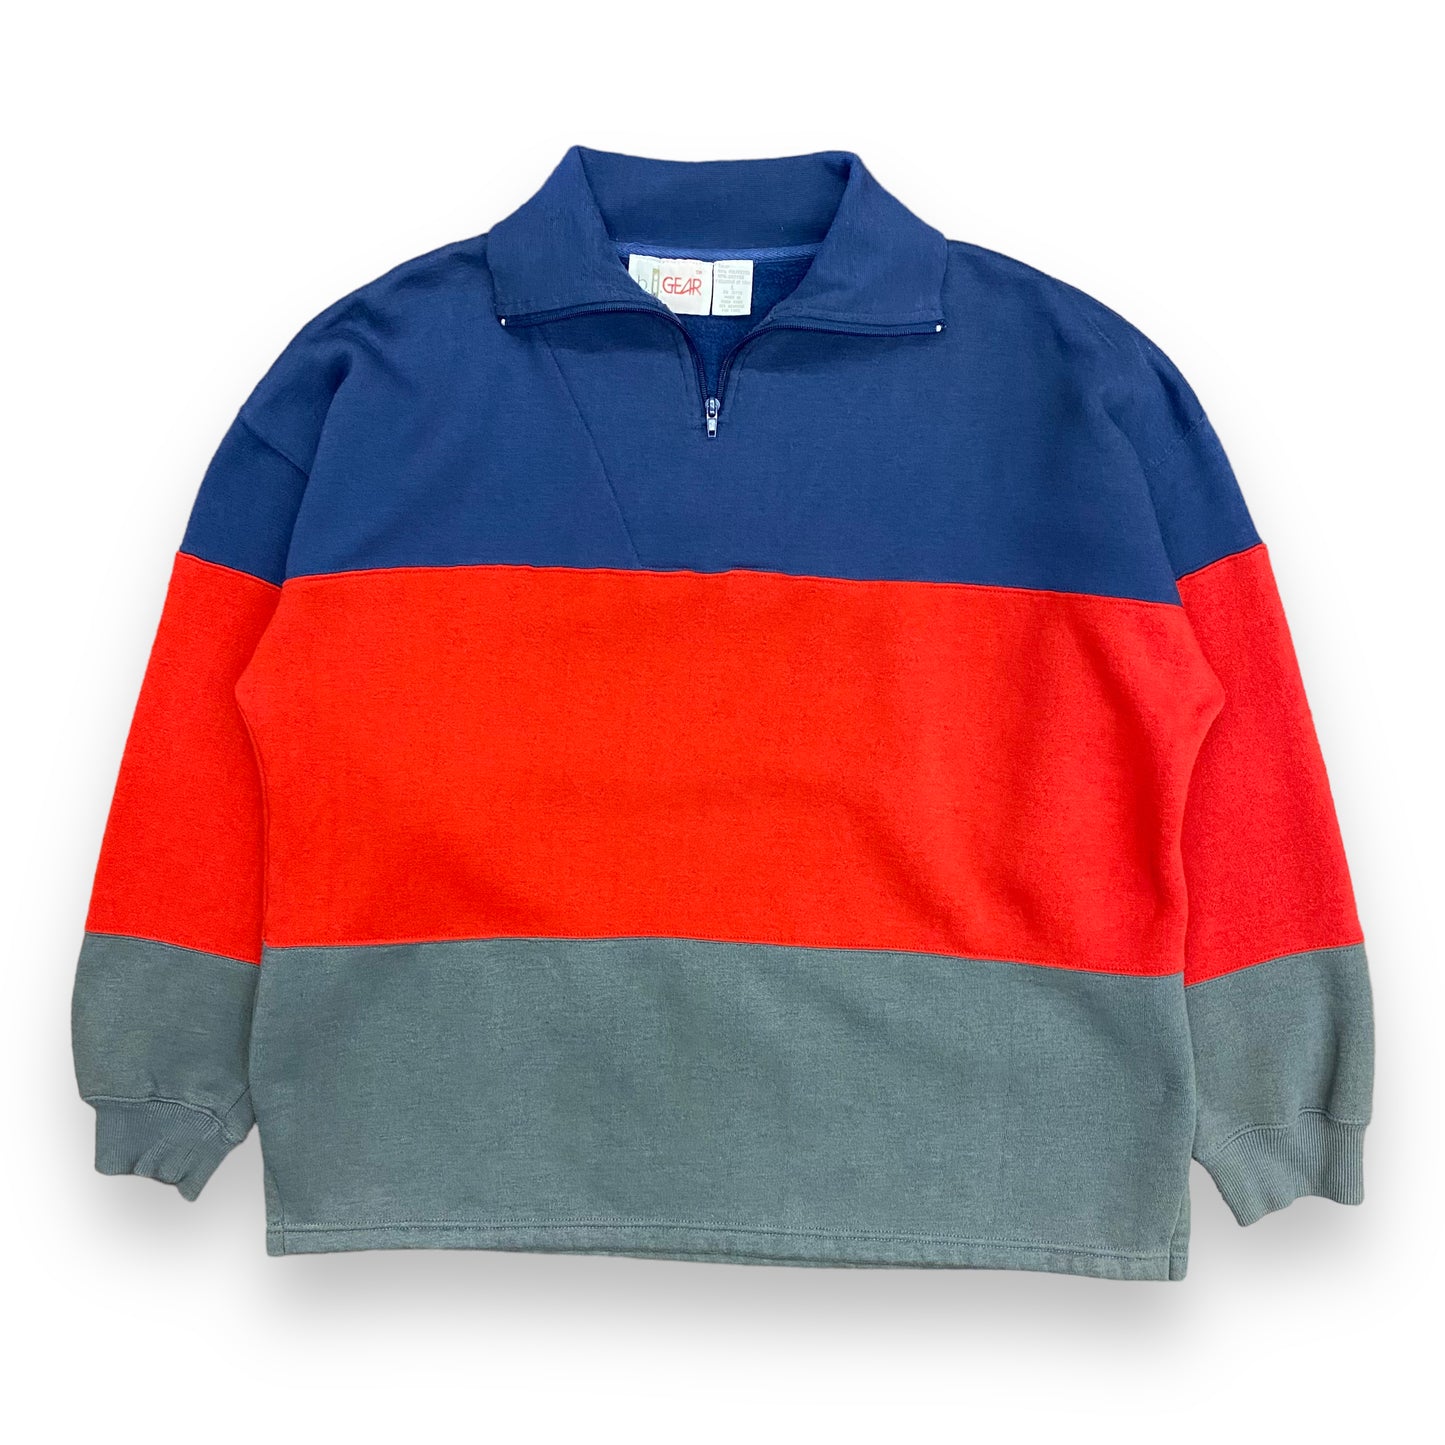 Vintage Quarter-Zip Colorblock Sweatshirt - Size Large